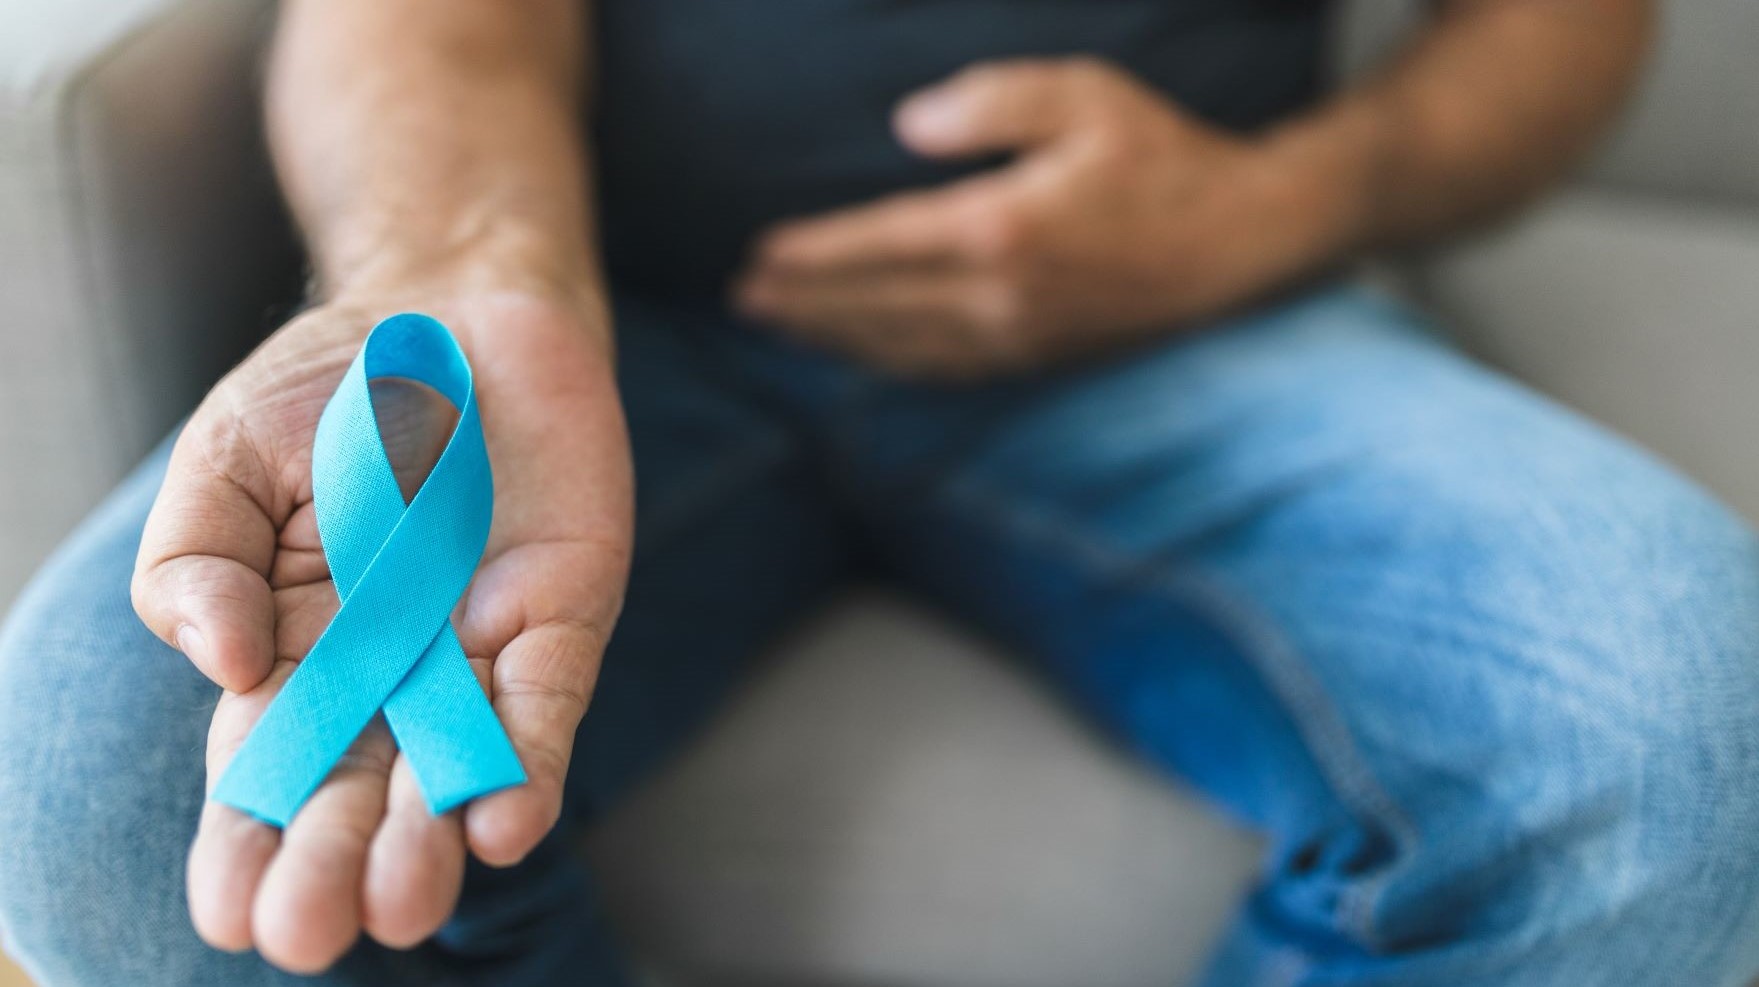 Die Blue Ribbon - die blaue Schleife - und der Movember sollen Aufmerksamkeit und Aufklärung für Prostatakrebs schaffen